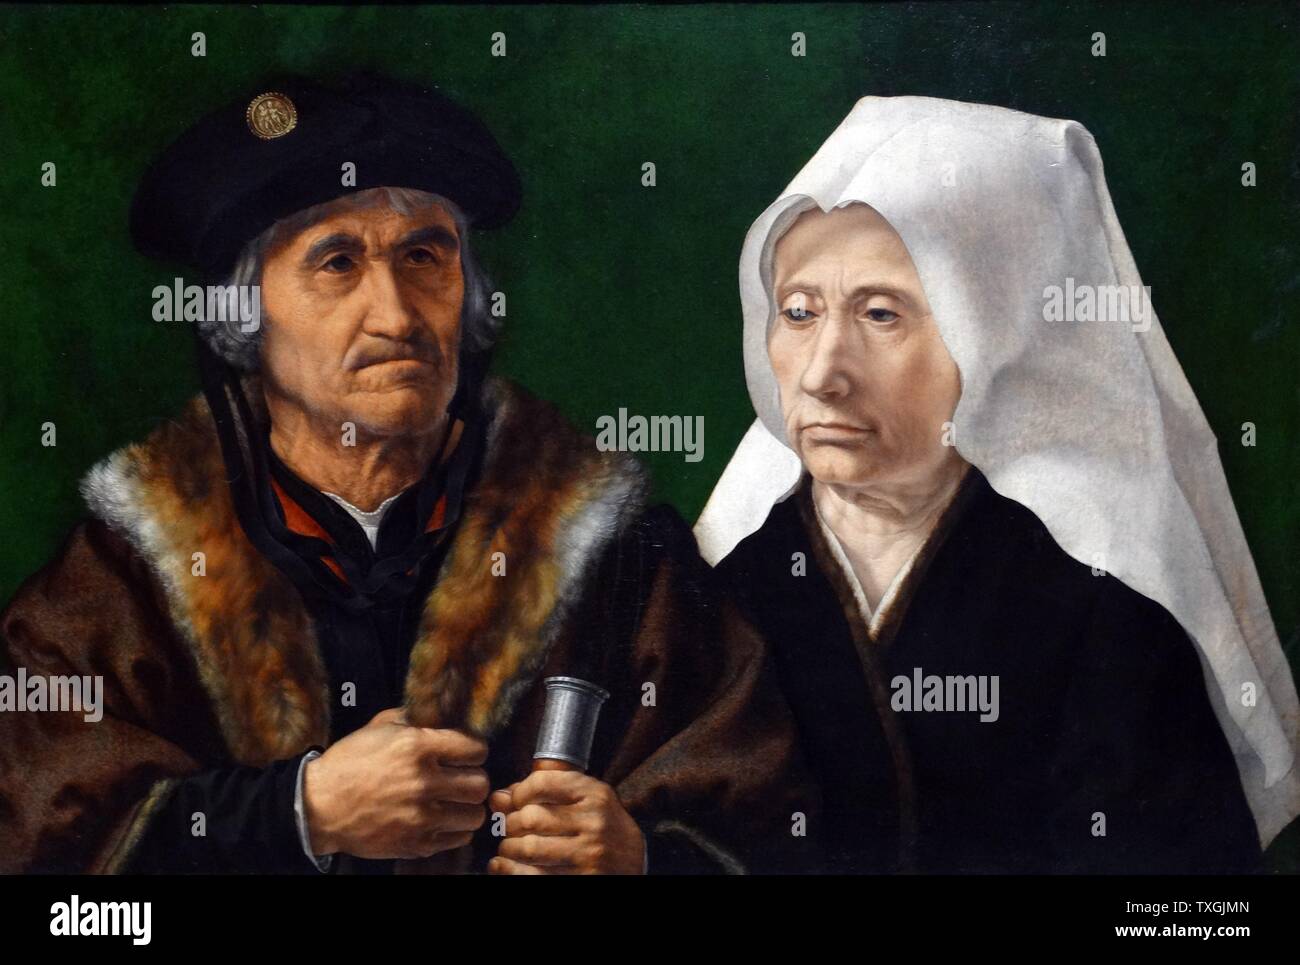 Gemälde mit dem Titel "Ein älteres Ehepaar" von Jan Gossaert (1478-1532), ein französischer Maler und Mitglied der Gilde des Heiligen Lukas. Datiert aus dem 16. Jahrhundert Stockfoto